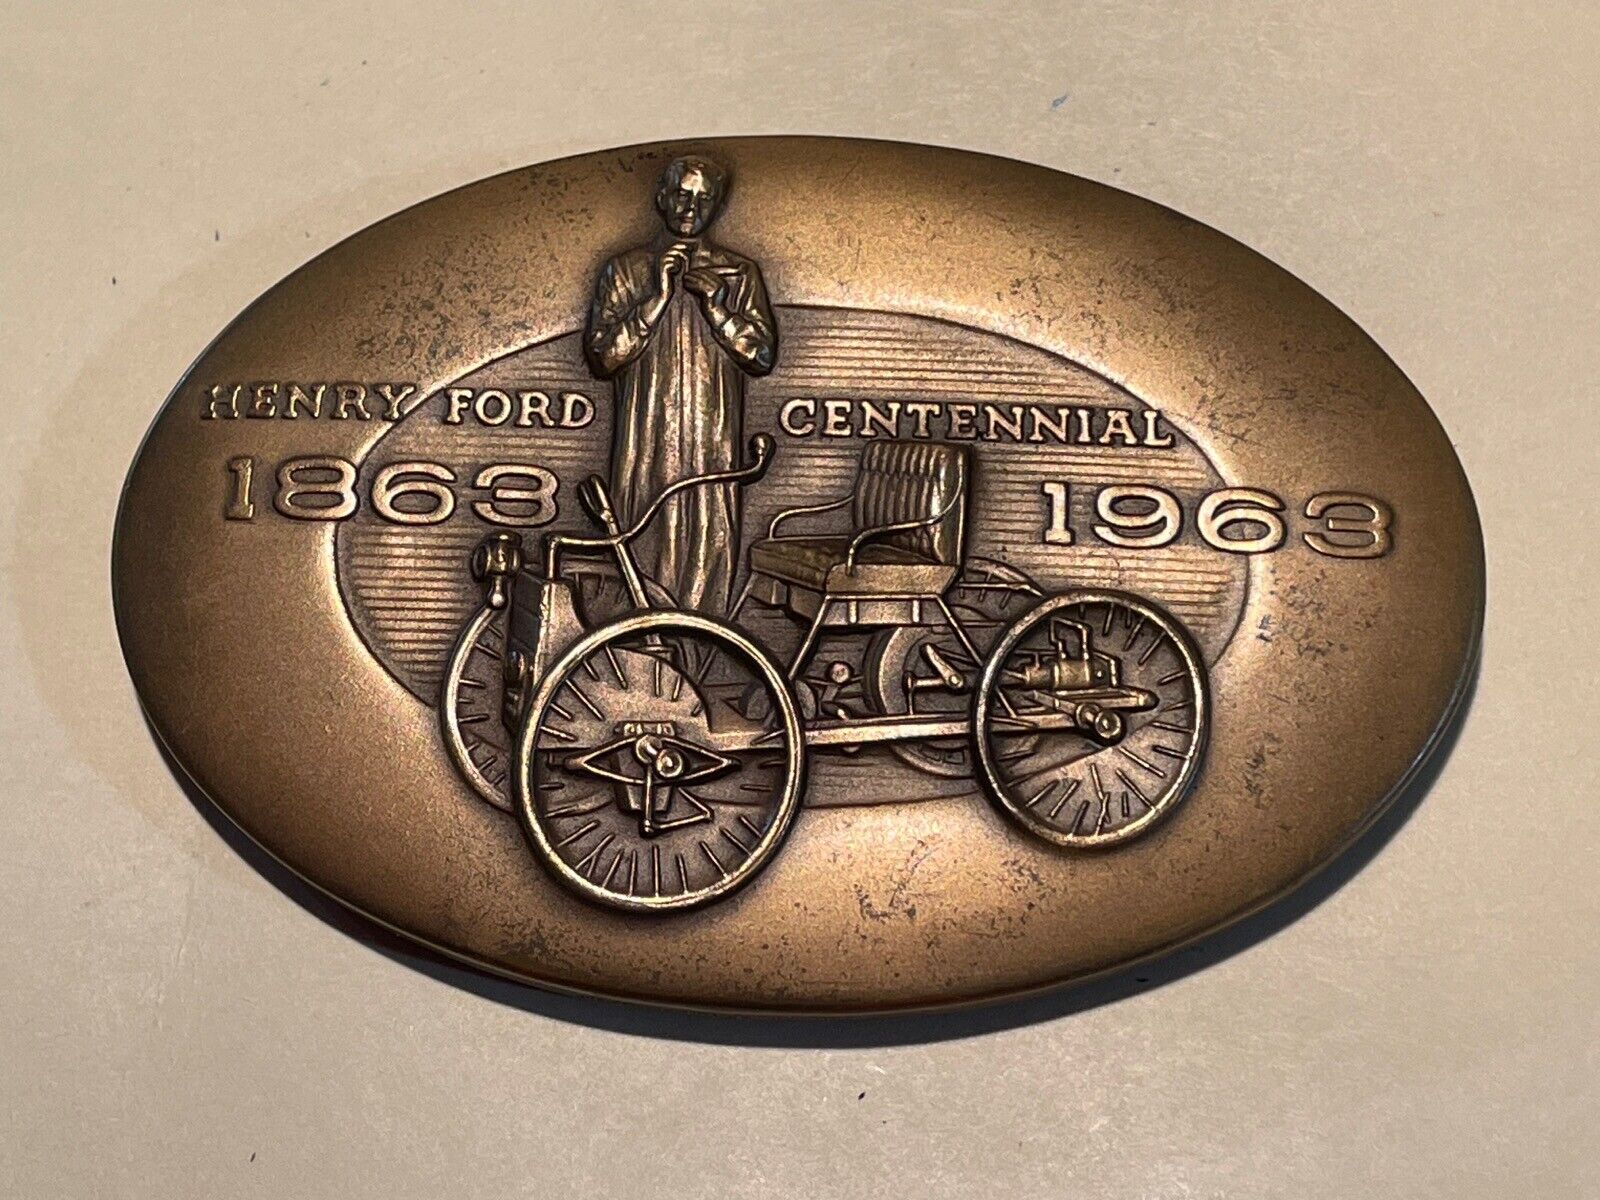 Bronze Ford 1863-1963 Centennial Medallion Paperweight - Metallic Art